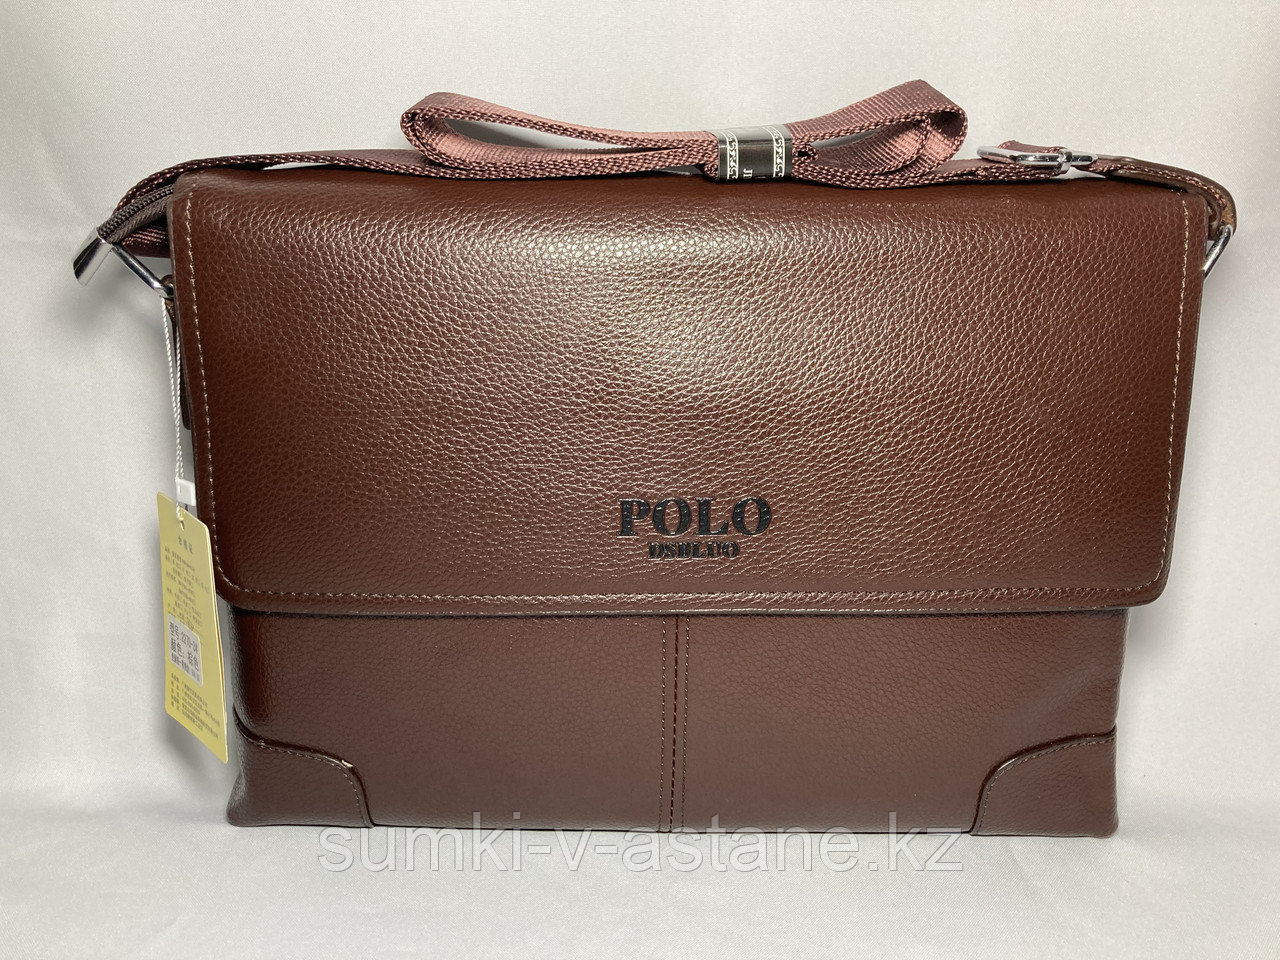 Мужская сумка мессенджер "POLO" через плечо (высота 24 см, ширина 34 см, глубина 6 см)